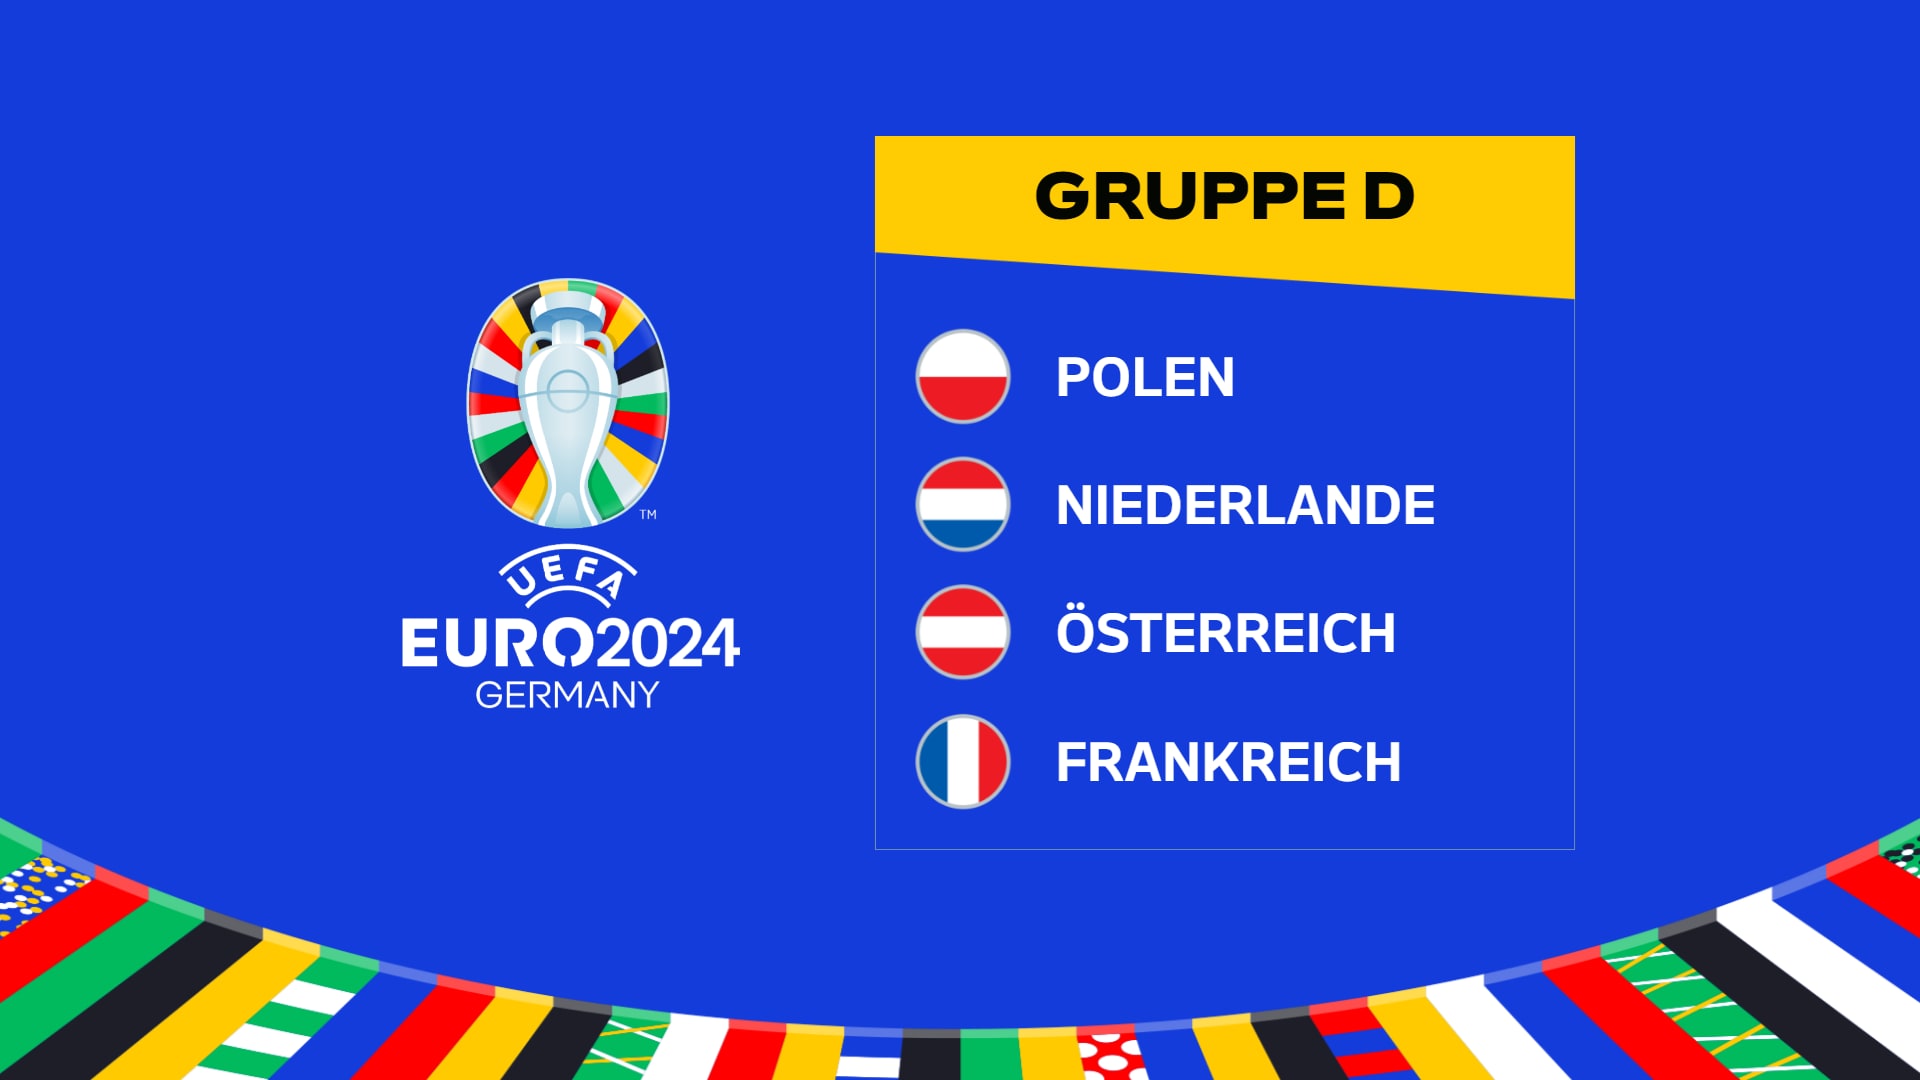 UEFA Euro 2024 Groep D: Polen, Nederland, Oostenrijk, Frankrijk |  Euro 2024